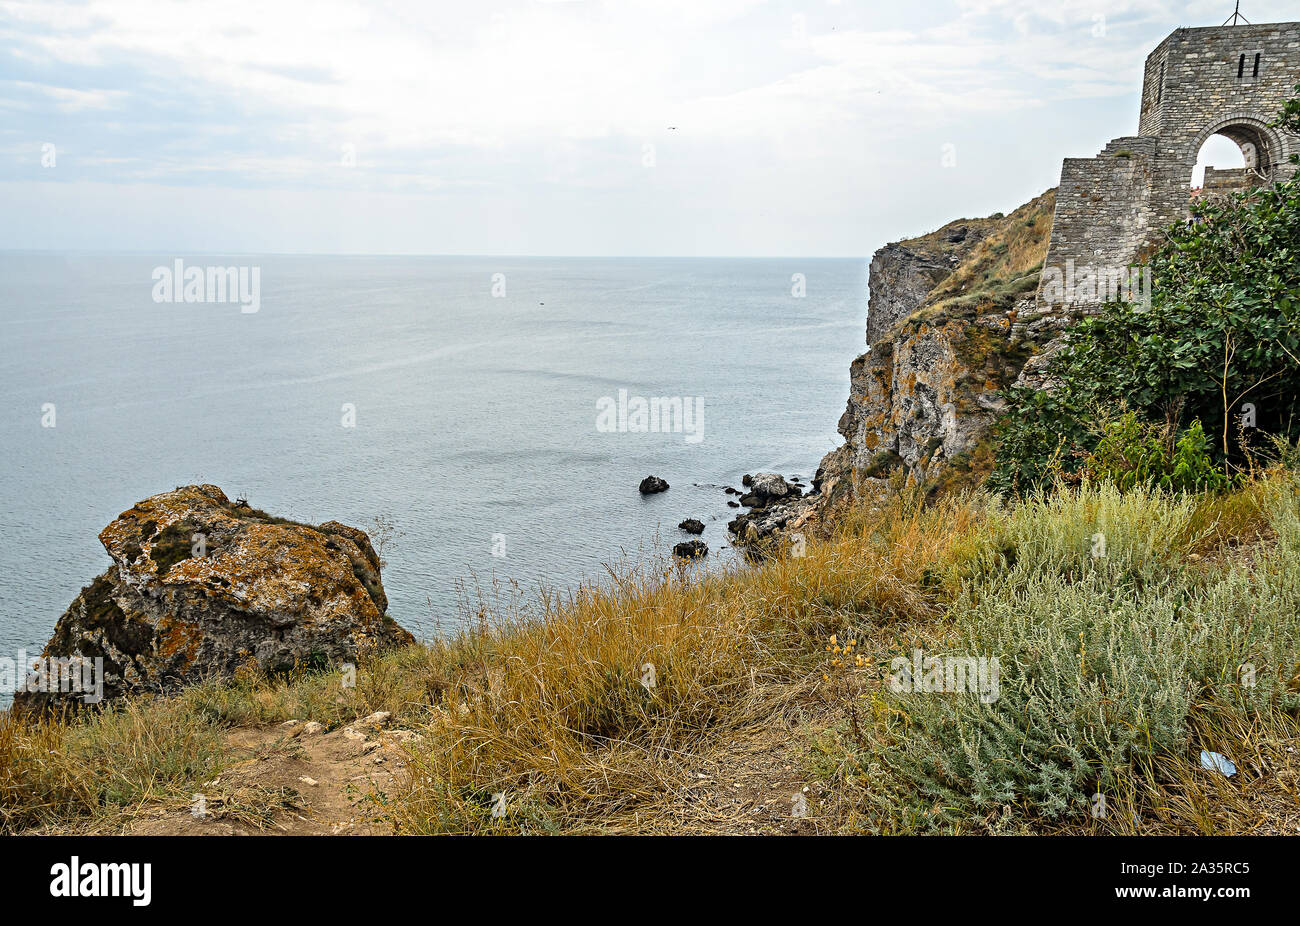 Verdi scogliere di Tracia, Kaliakra Lighthouse, nero acqua di mare, costa bulgara. Foto Stock